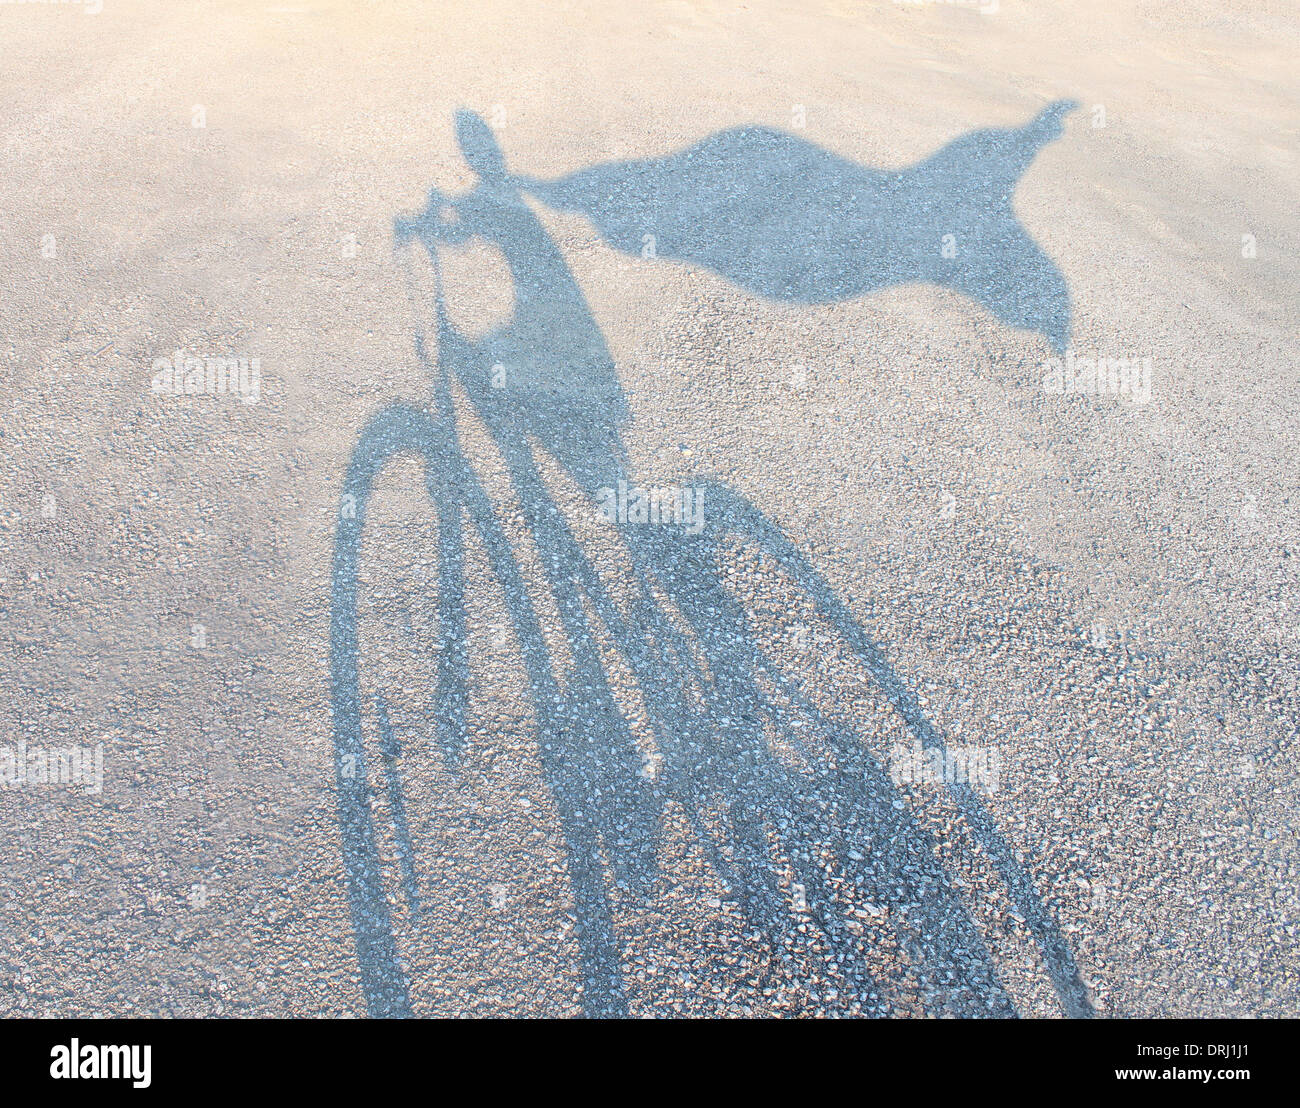 Super héros enfant portant une cape d'une bicyclette comme une ombre en fonte sur une route se faisant passer pour un héros puissant comme une métaphore et symbole de la jeunesse et l'enfance de l'imagination et l'autonomisation des enfants l'estime de soi. Banque D'Images